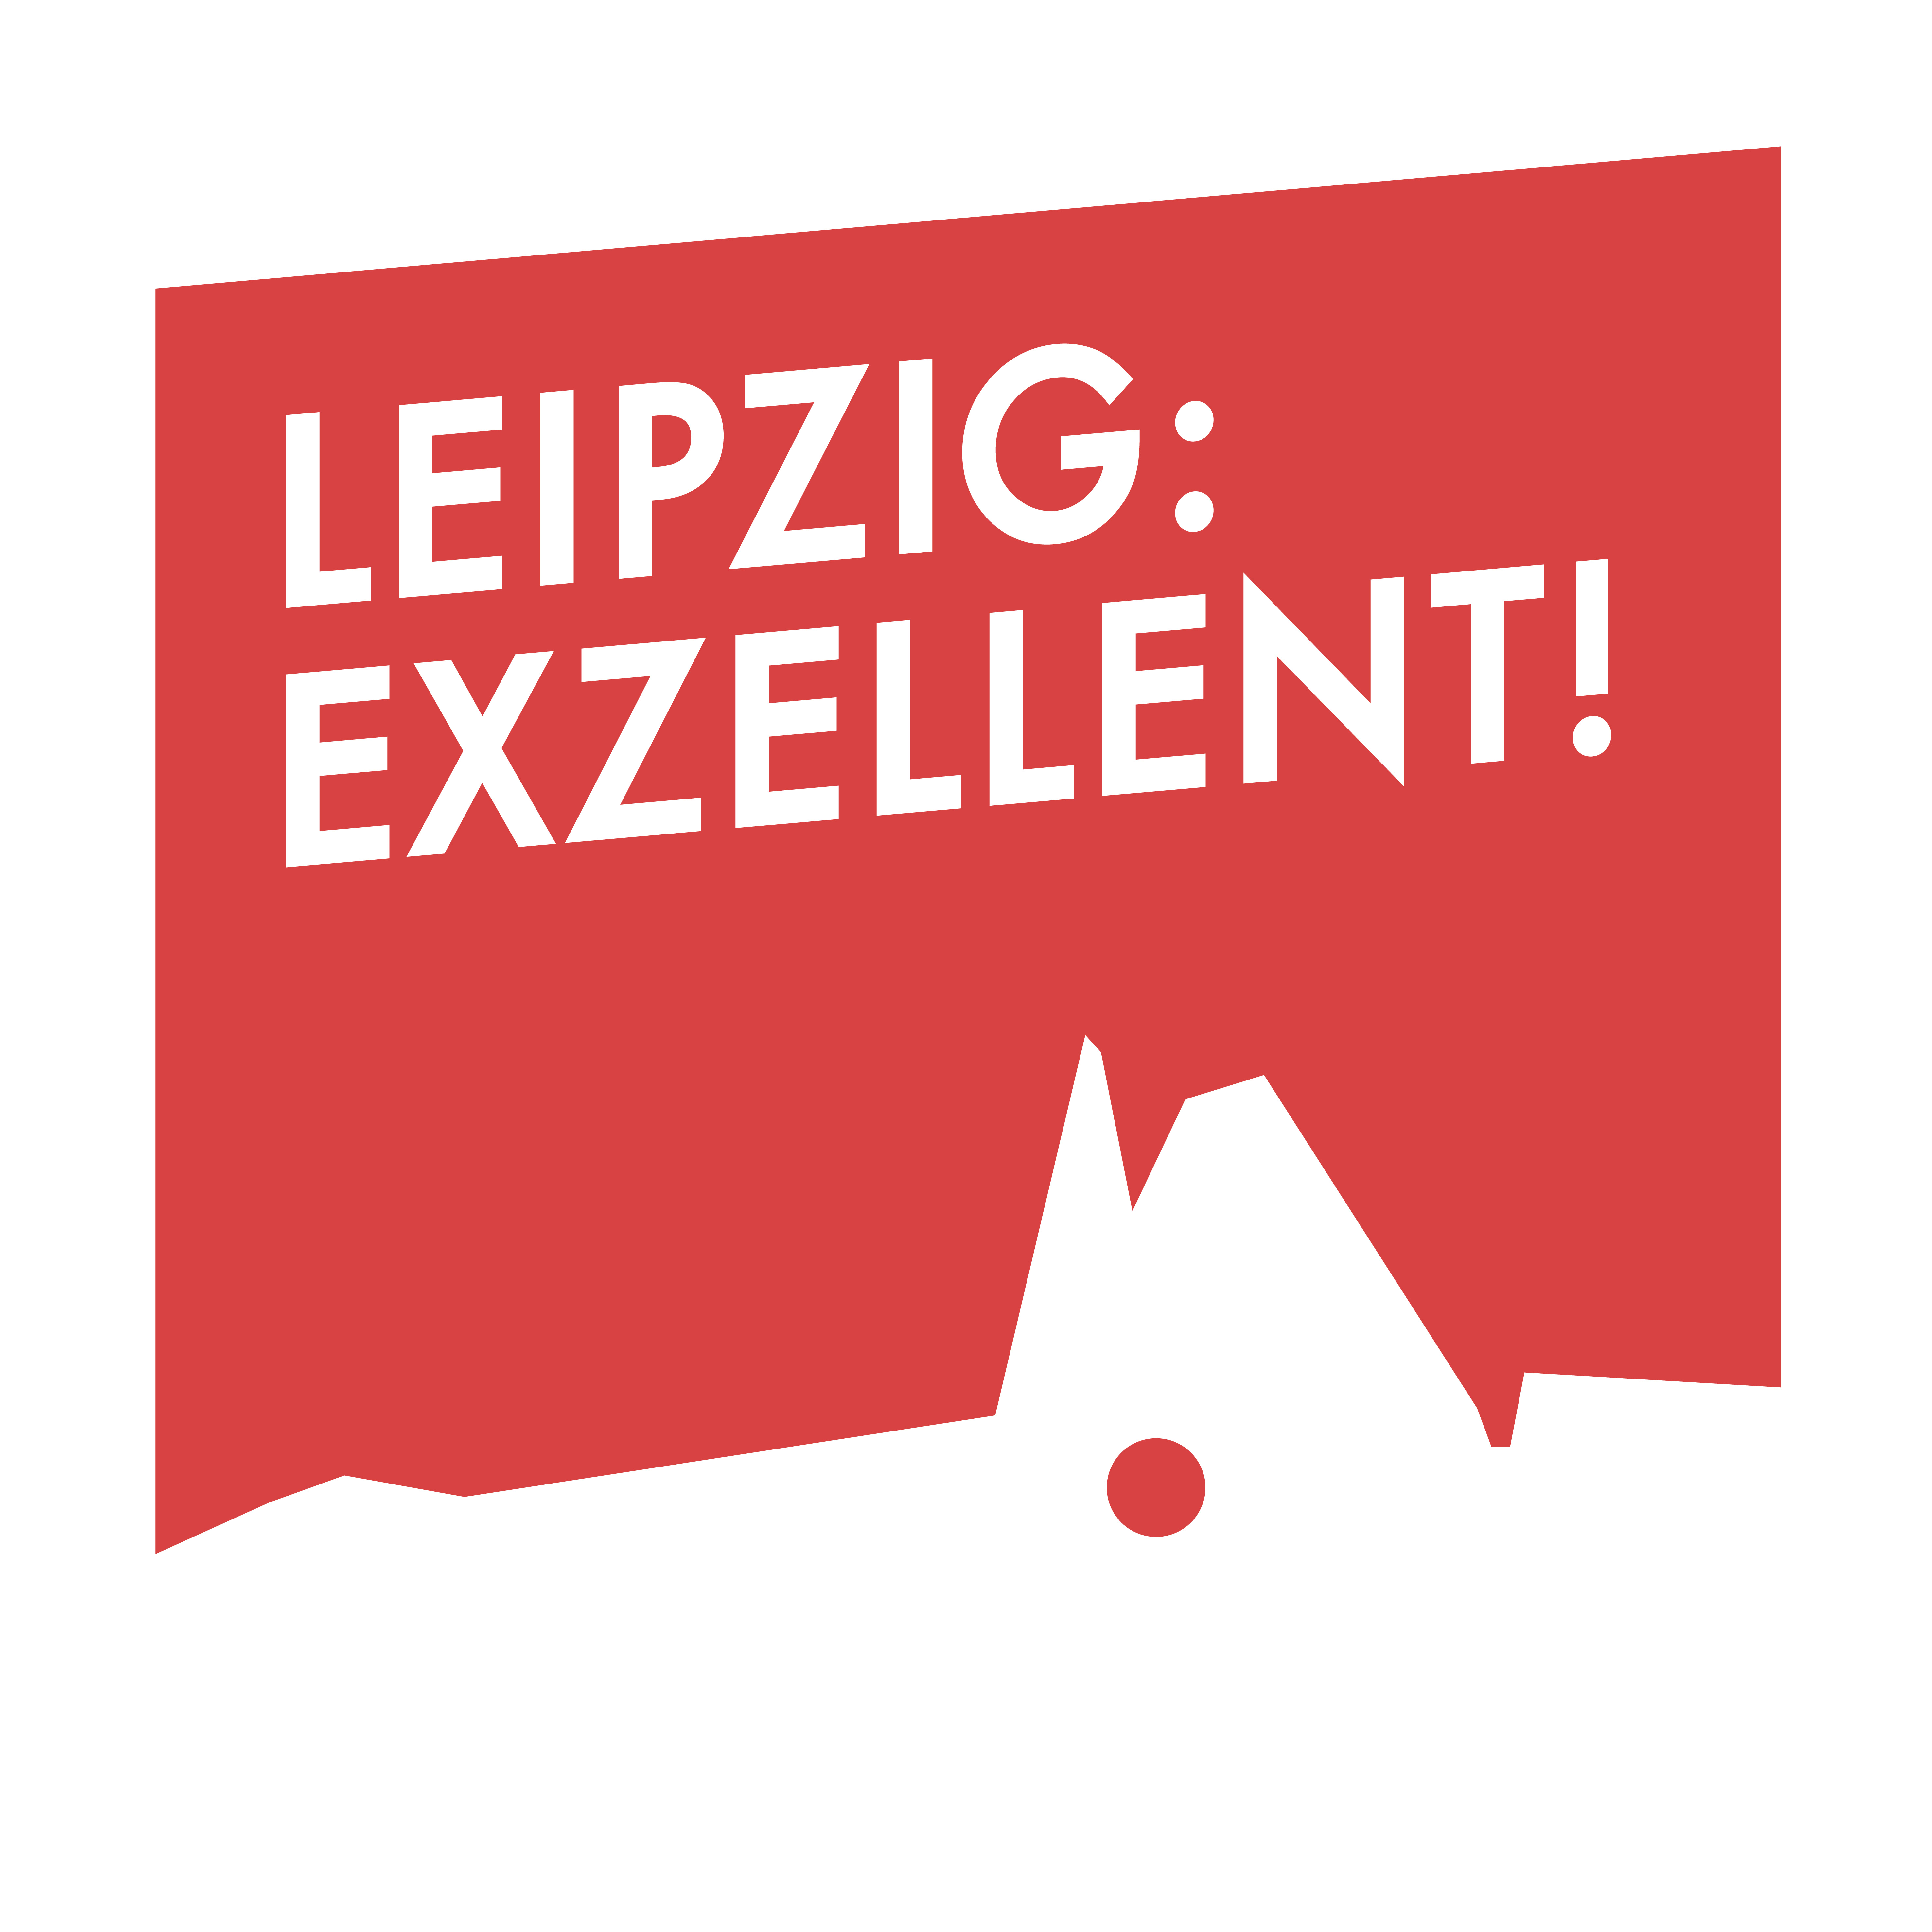 Leipzig: Exzellent!